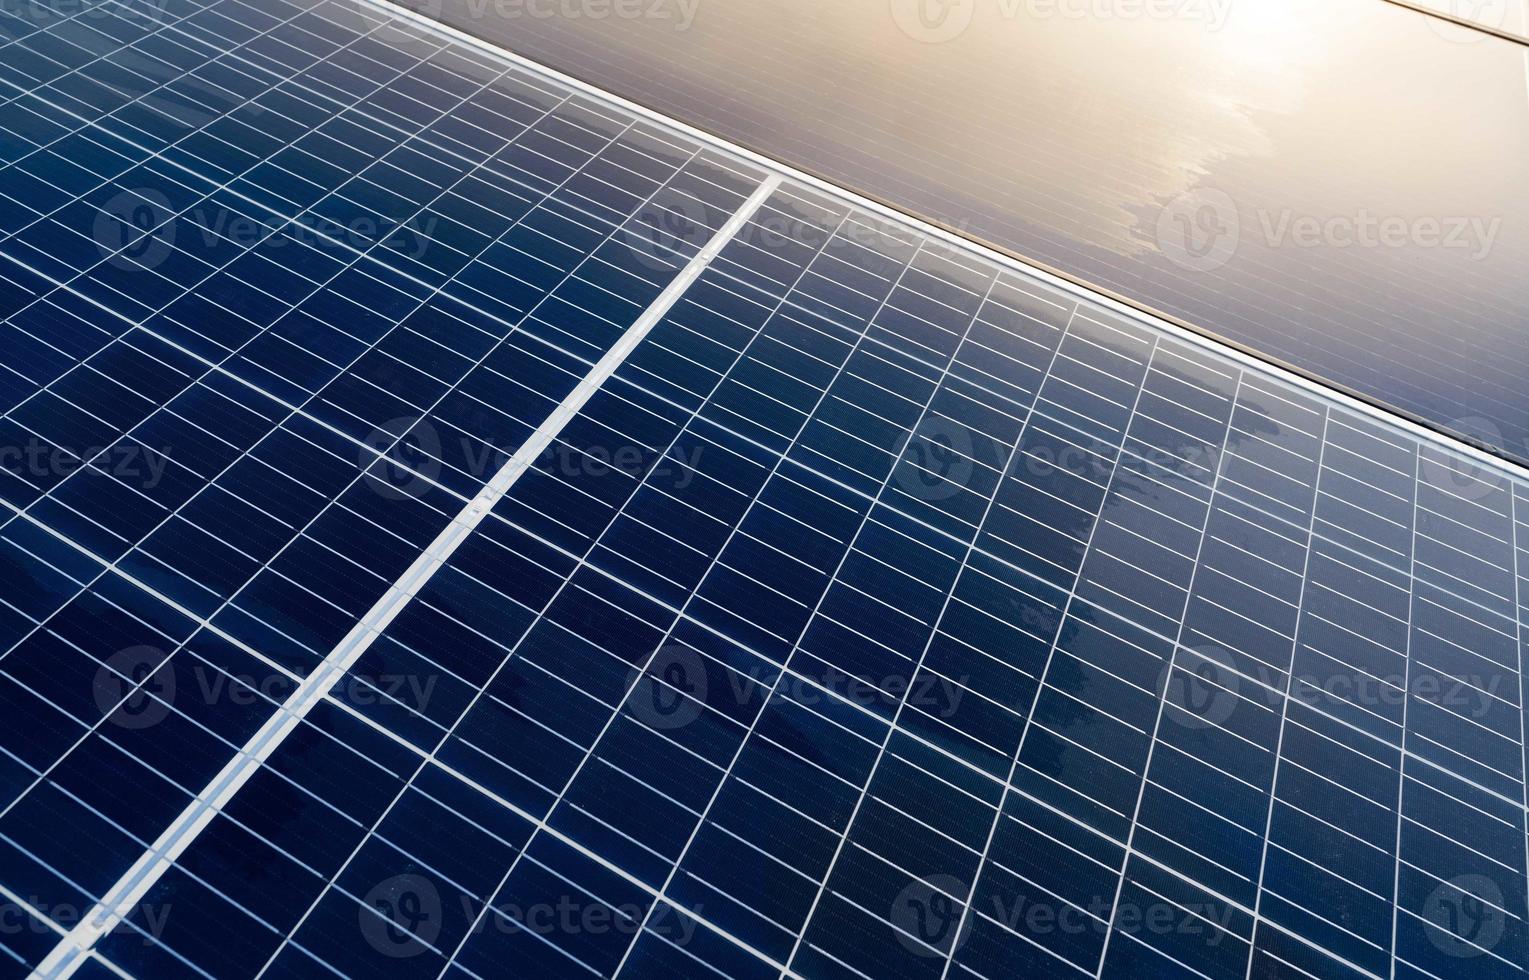 painéis solares ou módulo fotovoltaico. energia solar para energia verde. recursos sustentáveis. energia renovável. tecnologia limpa. painéis de células solares usam a luz do sol como fonte para gerar eletricidade. foto